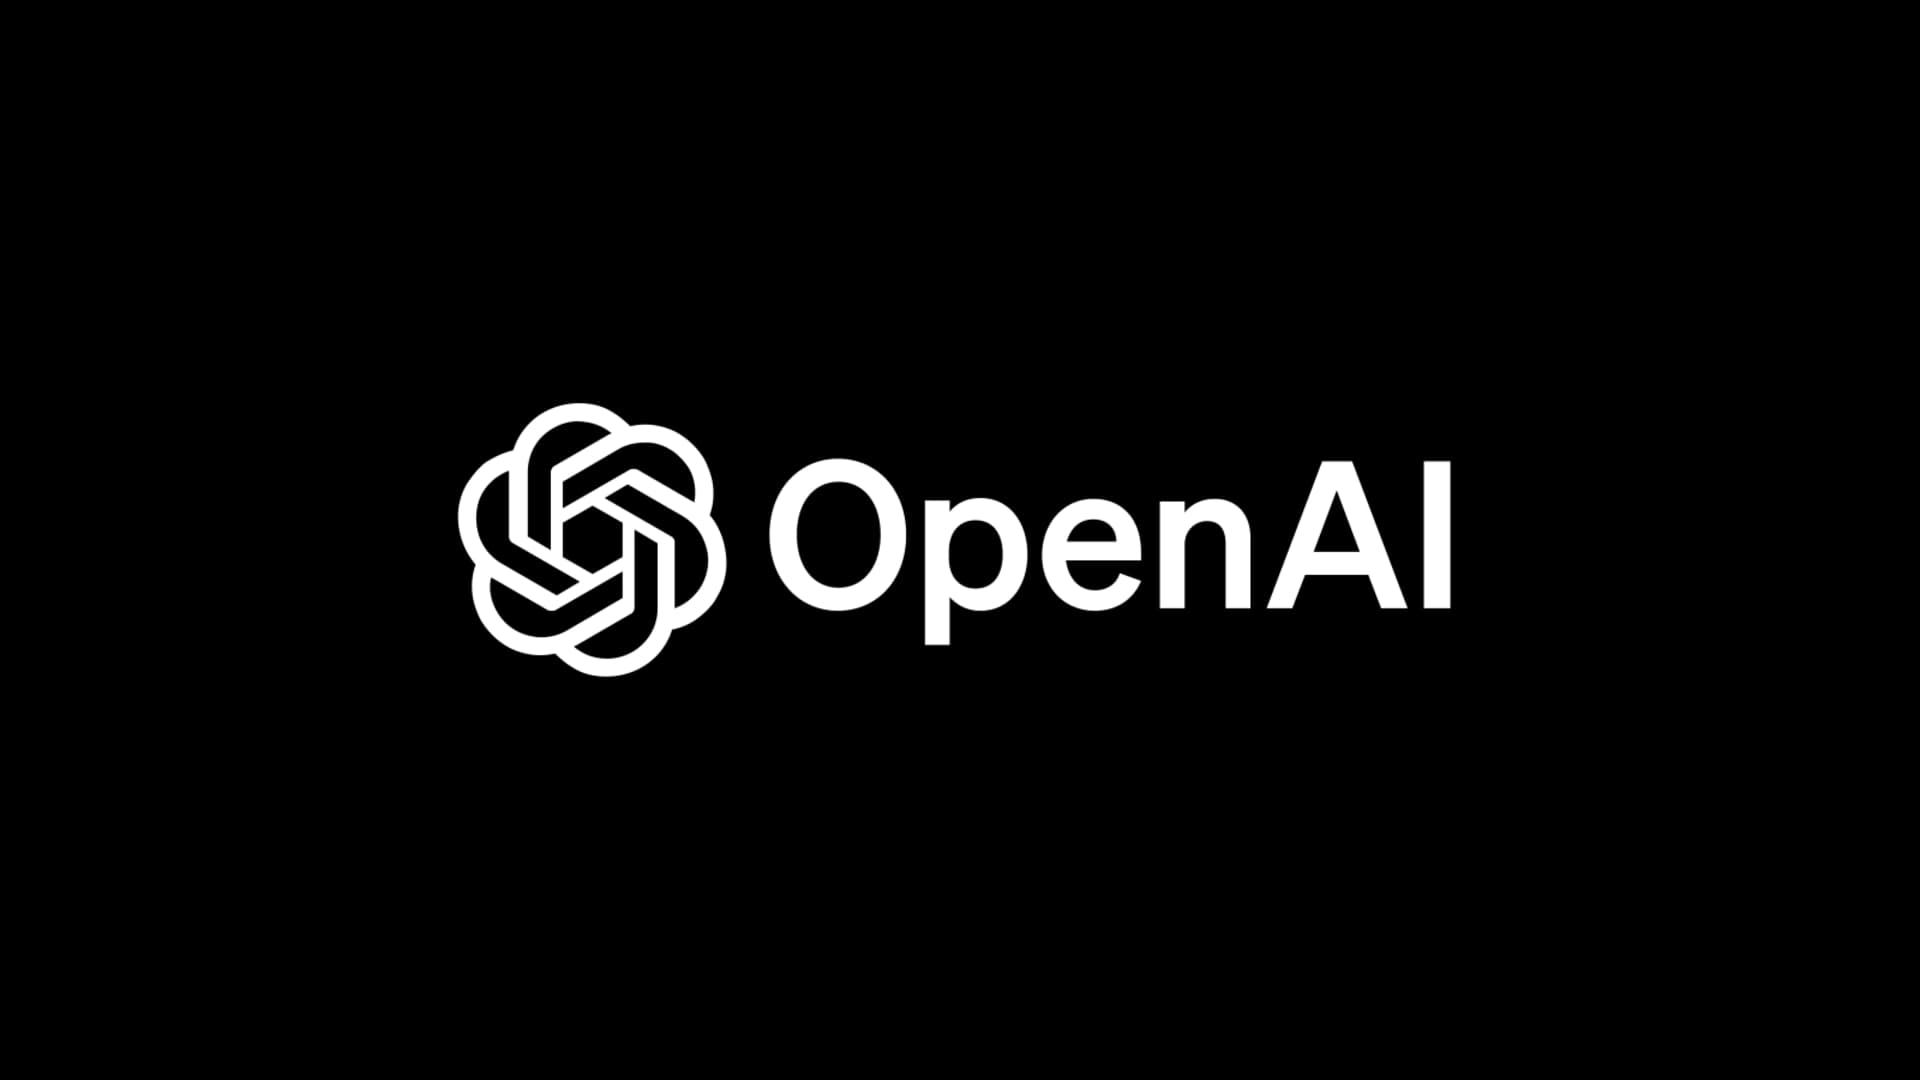 OpenAI अगले महीने बेंगलुरु में आयोजित करेगी कार्यक्रम, AI सुरक्षा पर होगी बातचीत